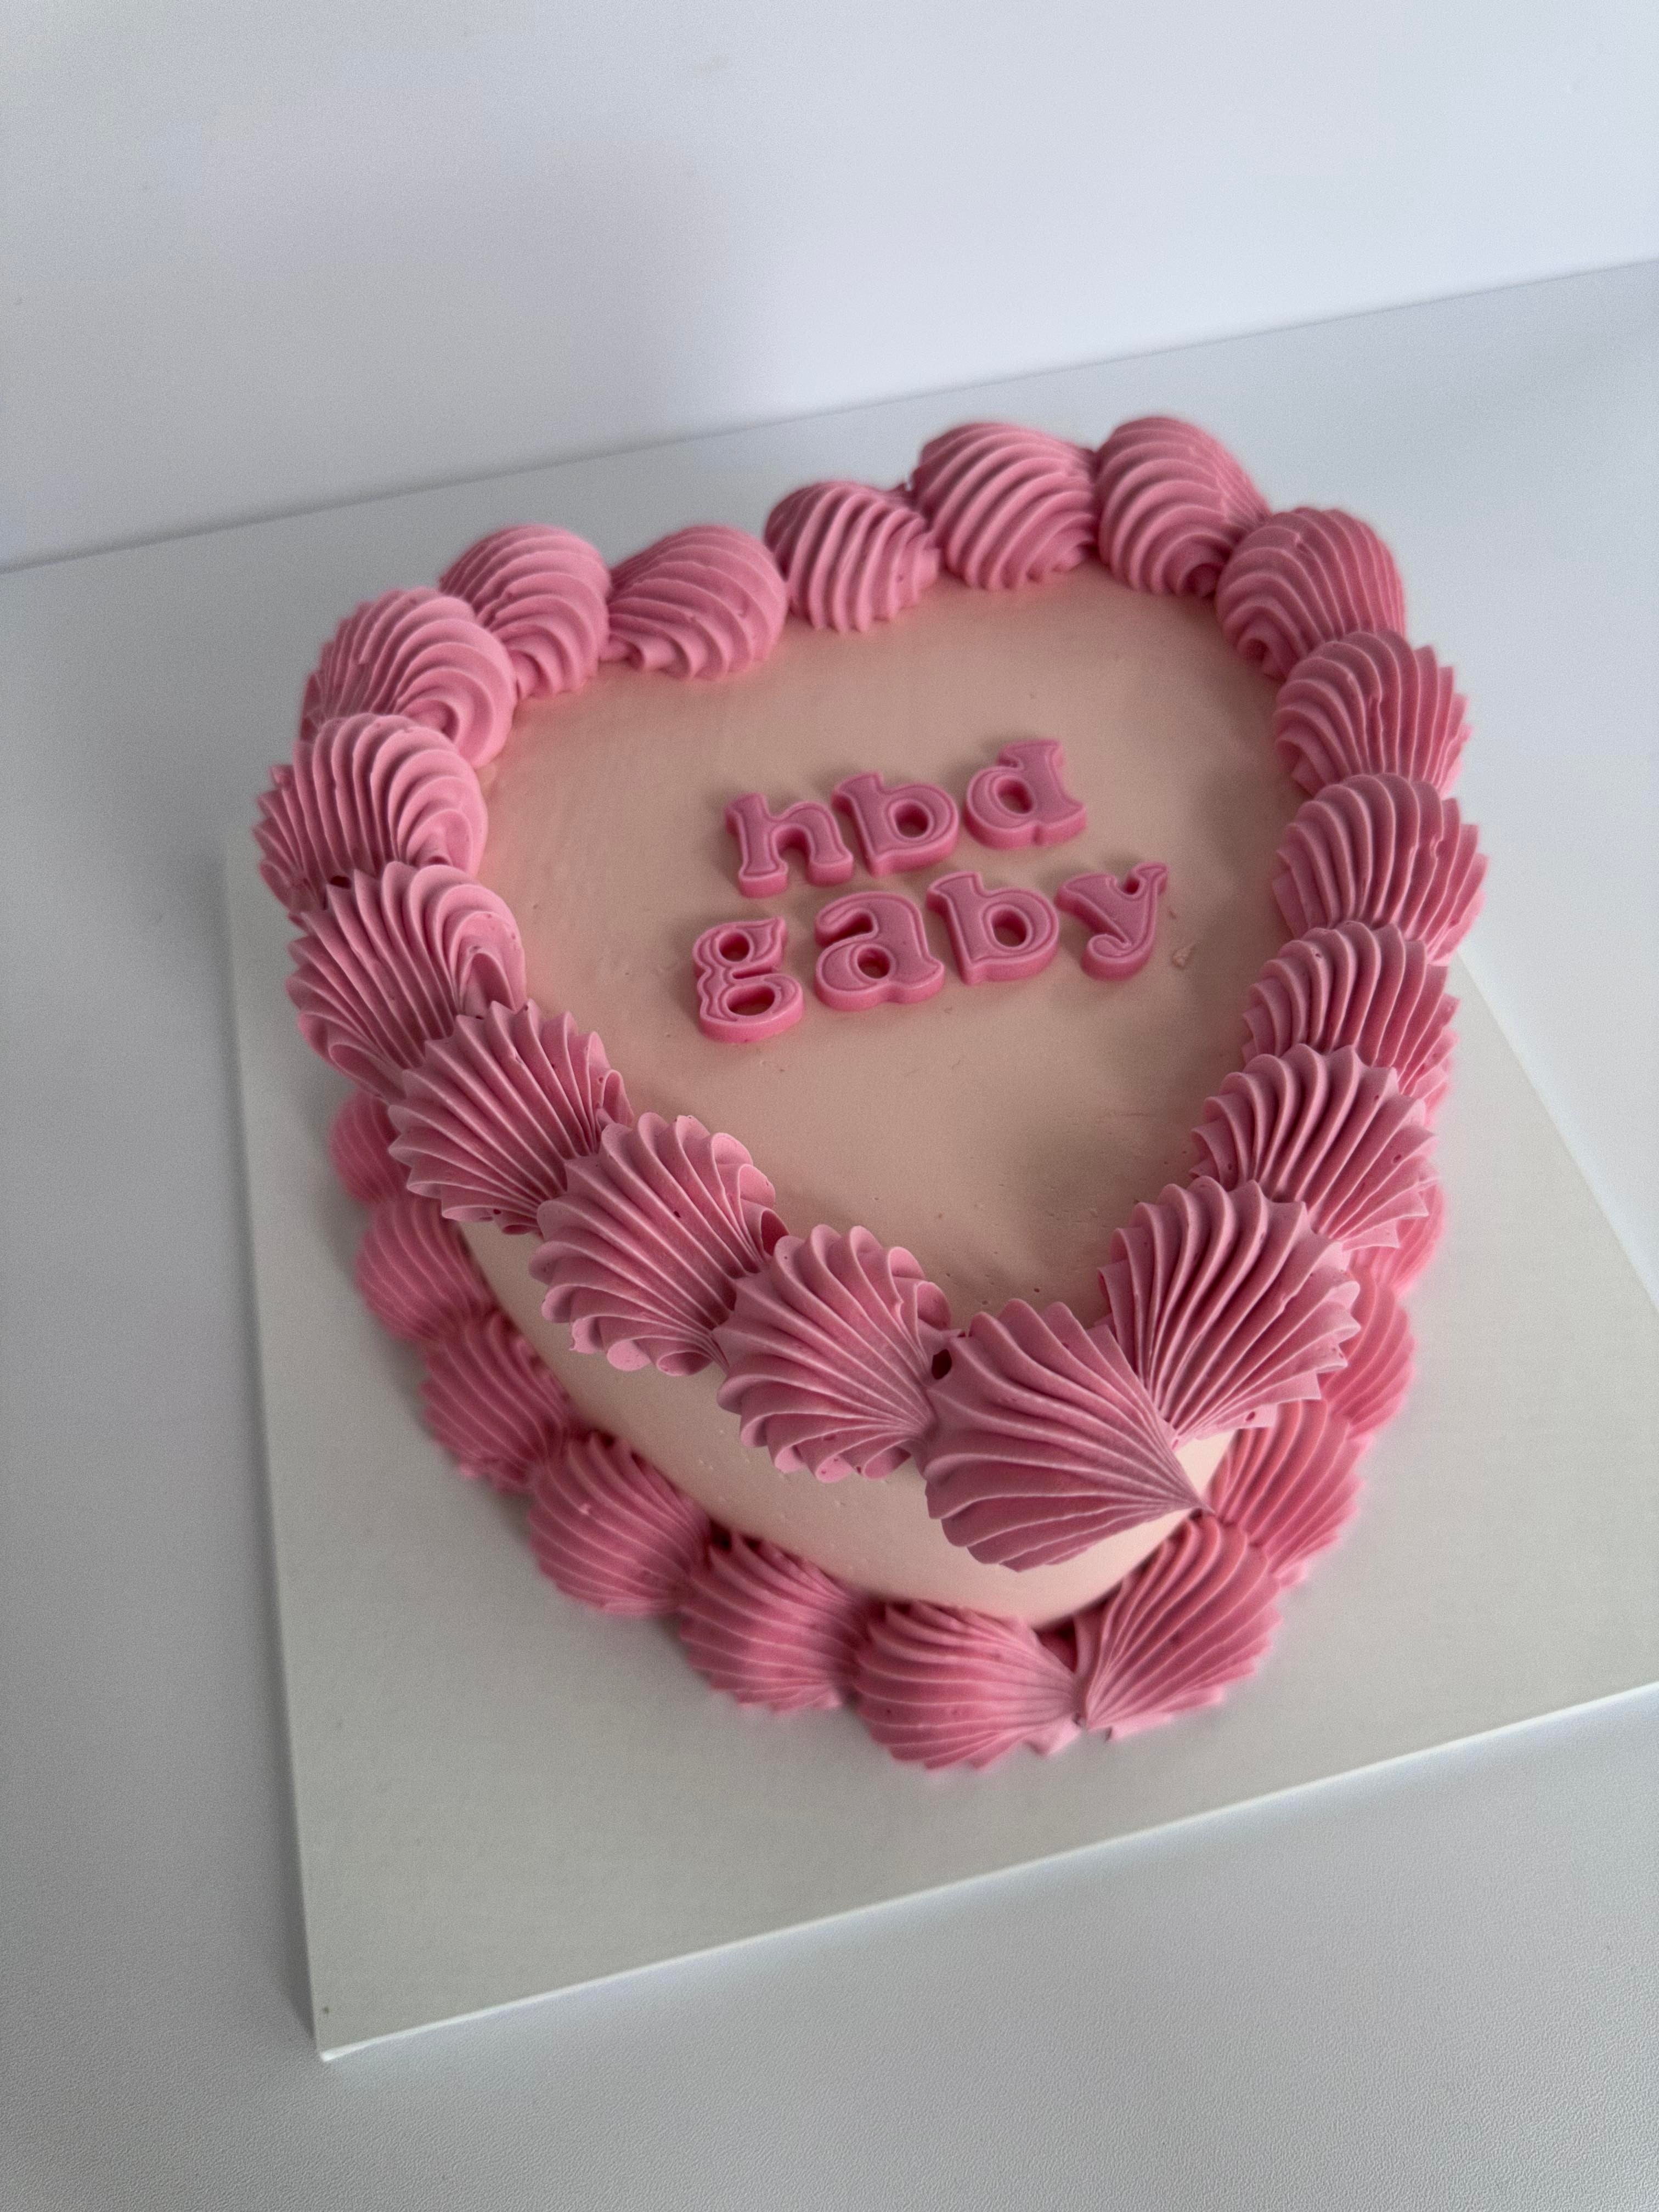 Buy/send Red Velvet Heart Cake order online in Jaipur | CakeWay.in